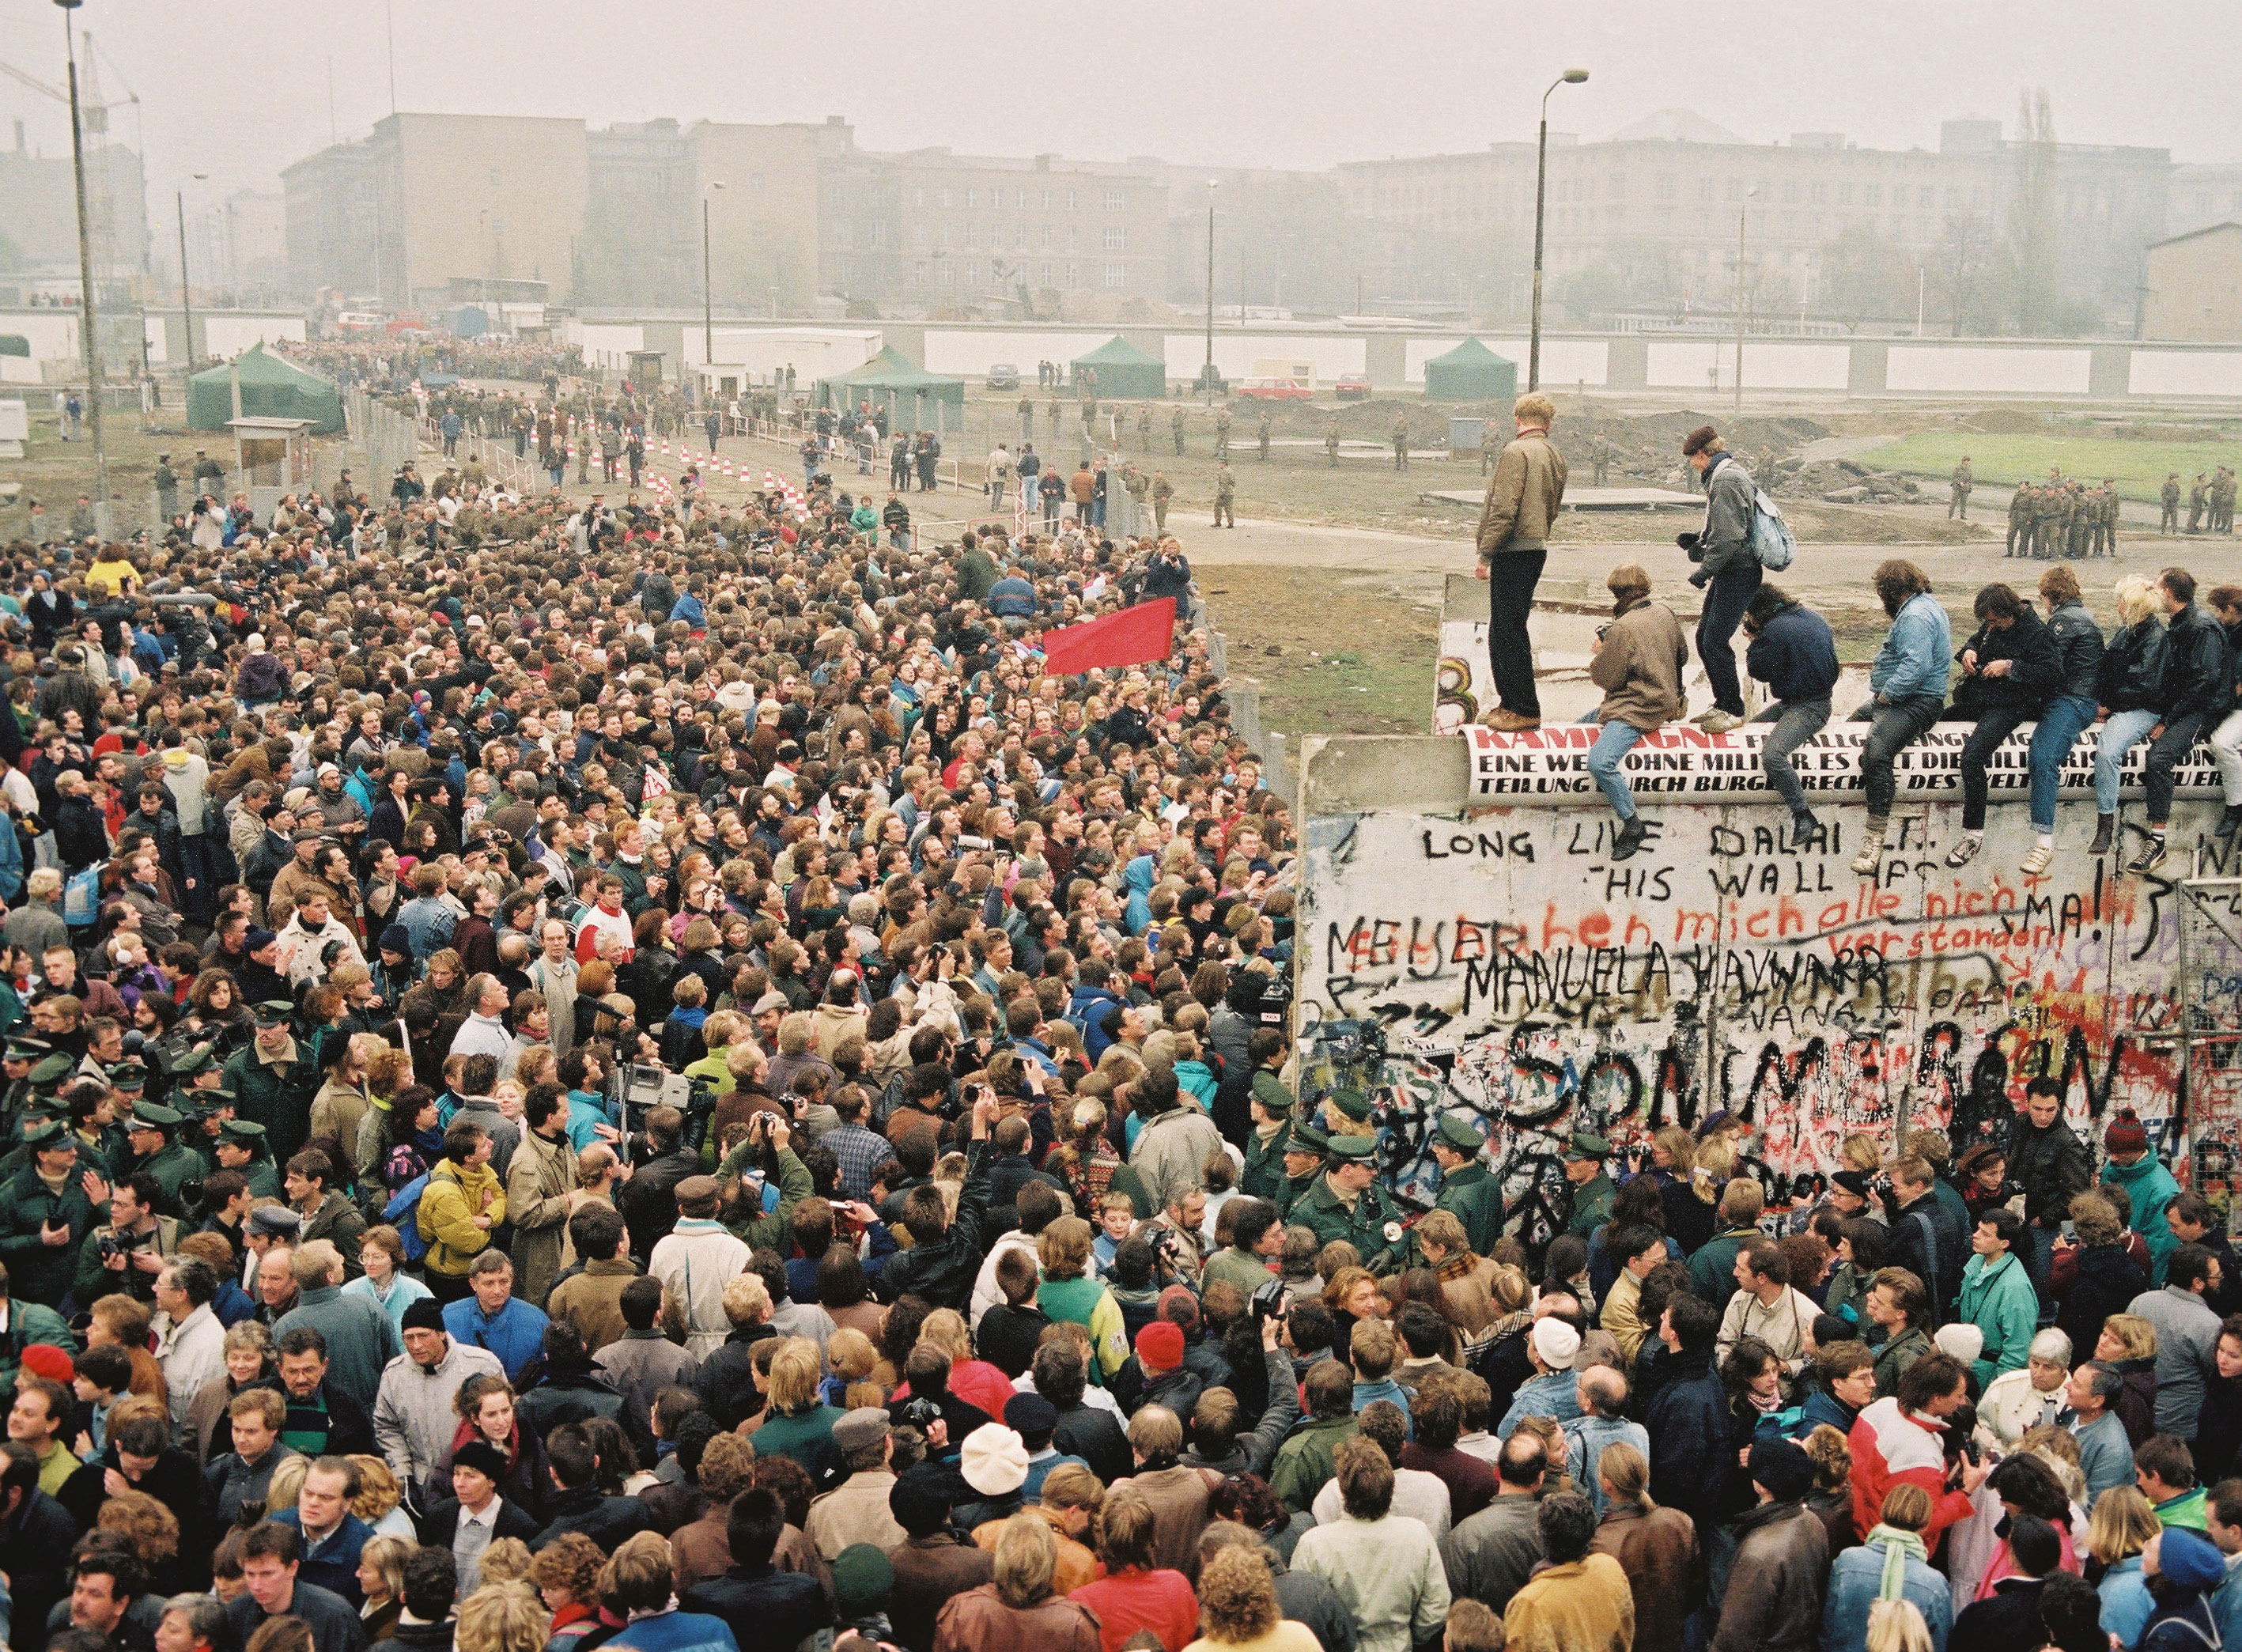 9 ноября 1989 ГДР открыла границу с Западным Берлином и ФРГ.   Пала Берлинская стена — символ длившегося 40 лет раздела города и немецкой нации